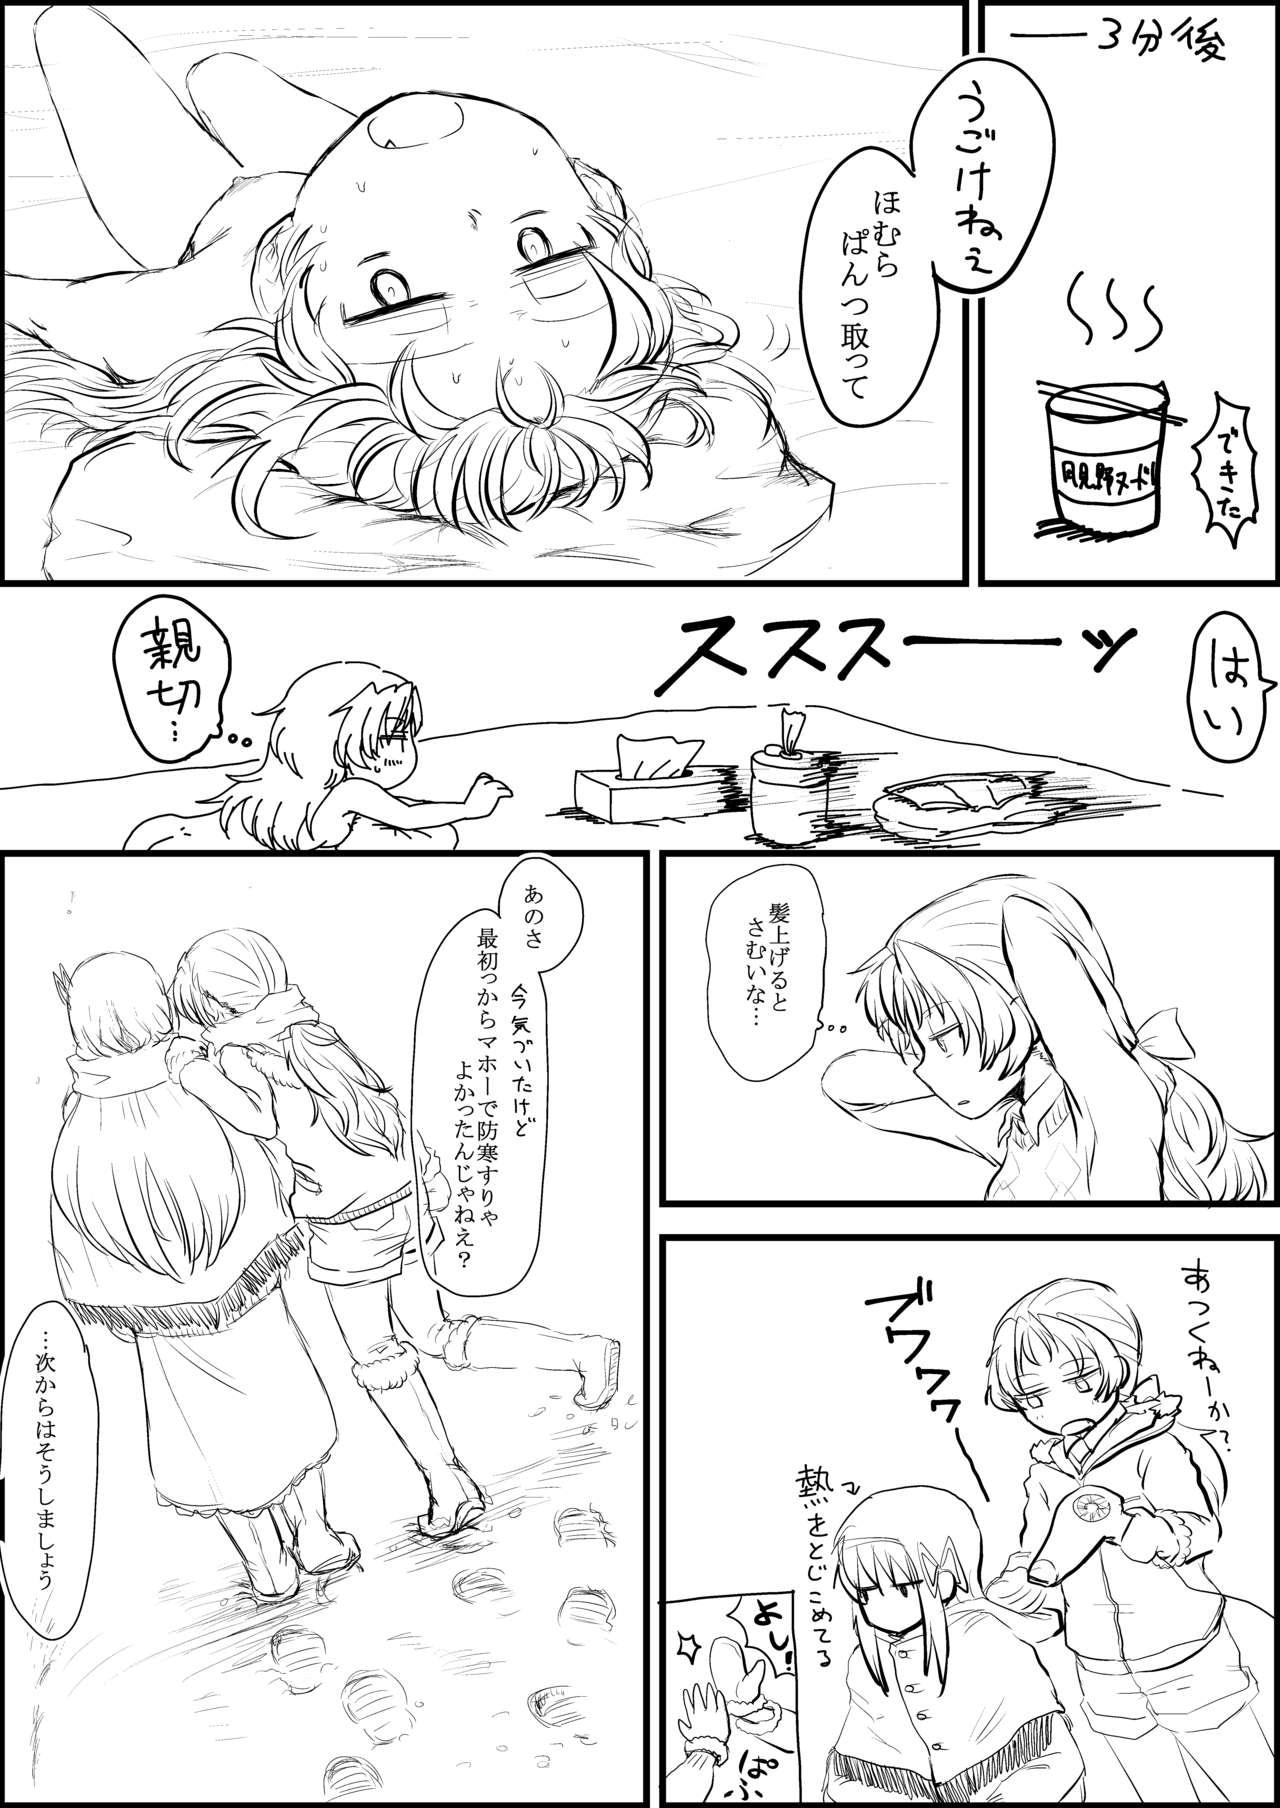 Leche AirCon Houkai HomuAn Manga - Puella magi madoka magica Bubblebutt - Page 8